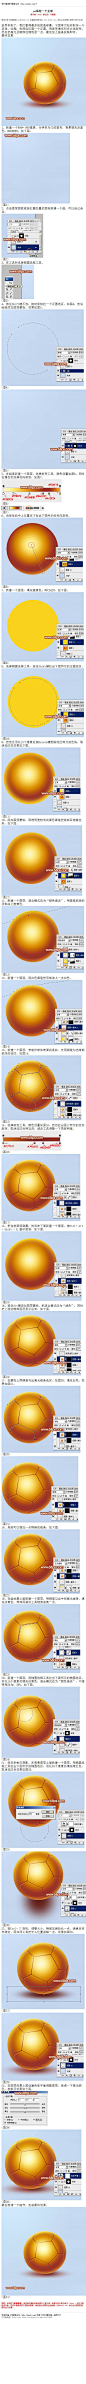 #鼠绘教程#《photoshop鼠绘一个足球》 世界杯到了，我们看得最多的就是球赛。下面学习如何制作一个足球。过程：先用选区画一个正圆，用渐变填充初步立体渐变，然后把高光及暗部处理明显一点 教程网址：http://bbs.16xx8.com/thread-167082-1-1.html